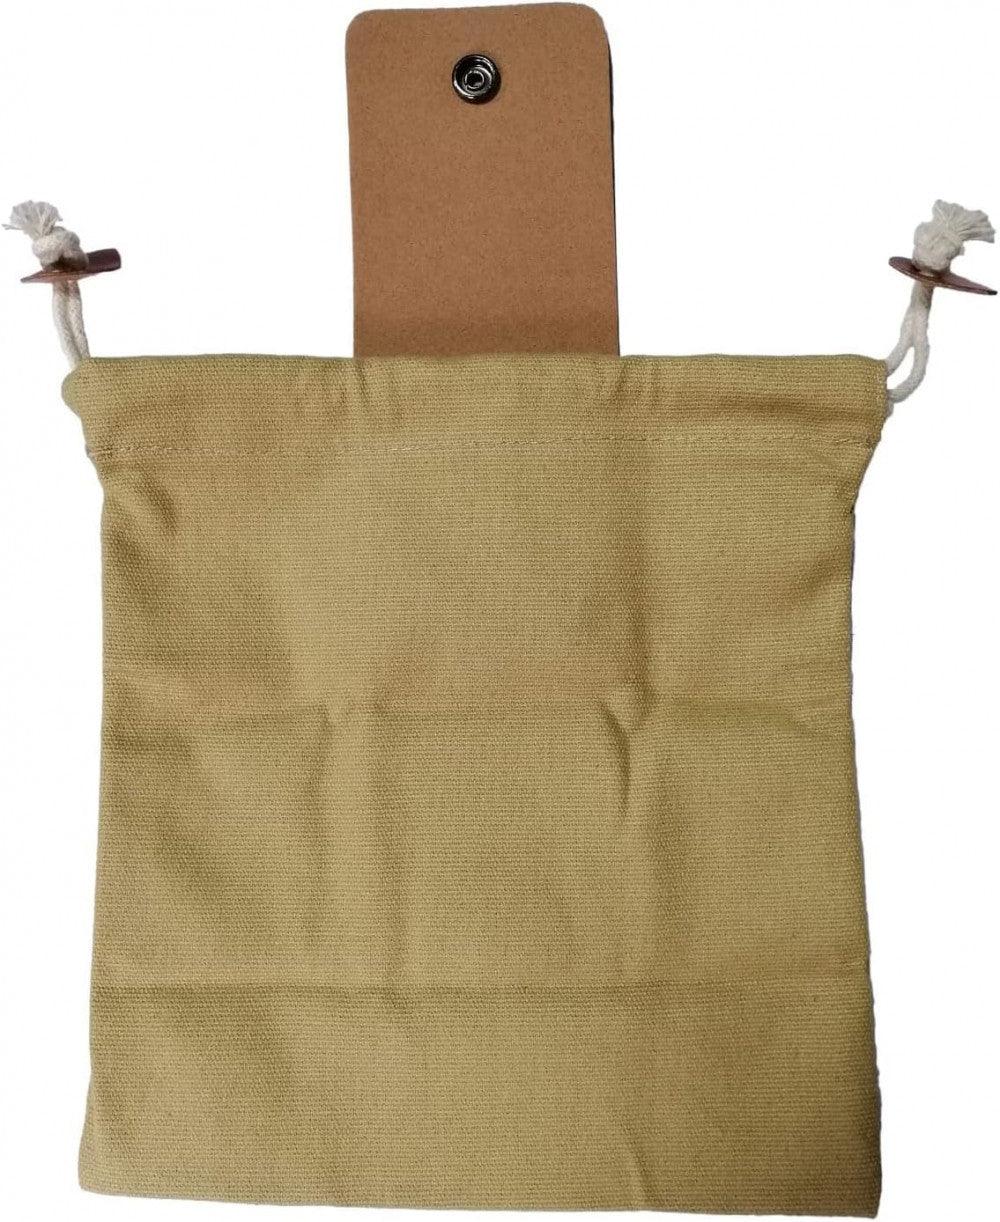 Viaszos vászon gyűjtőtáska, Gombagyűjtő táska, Összecsukható tároló 22 x 20cm nyitott állapotban